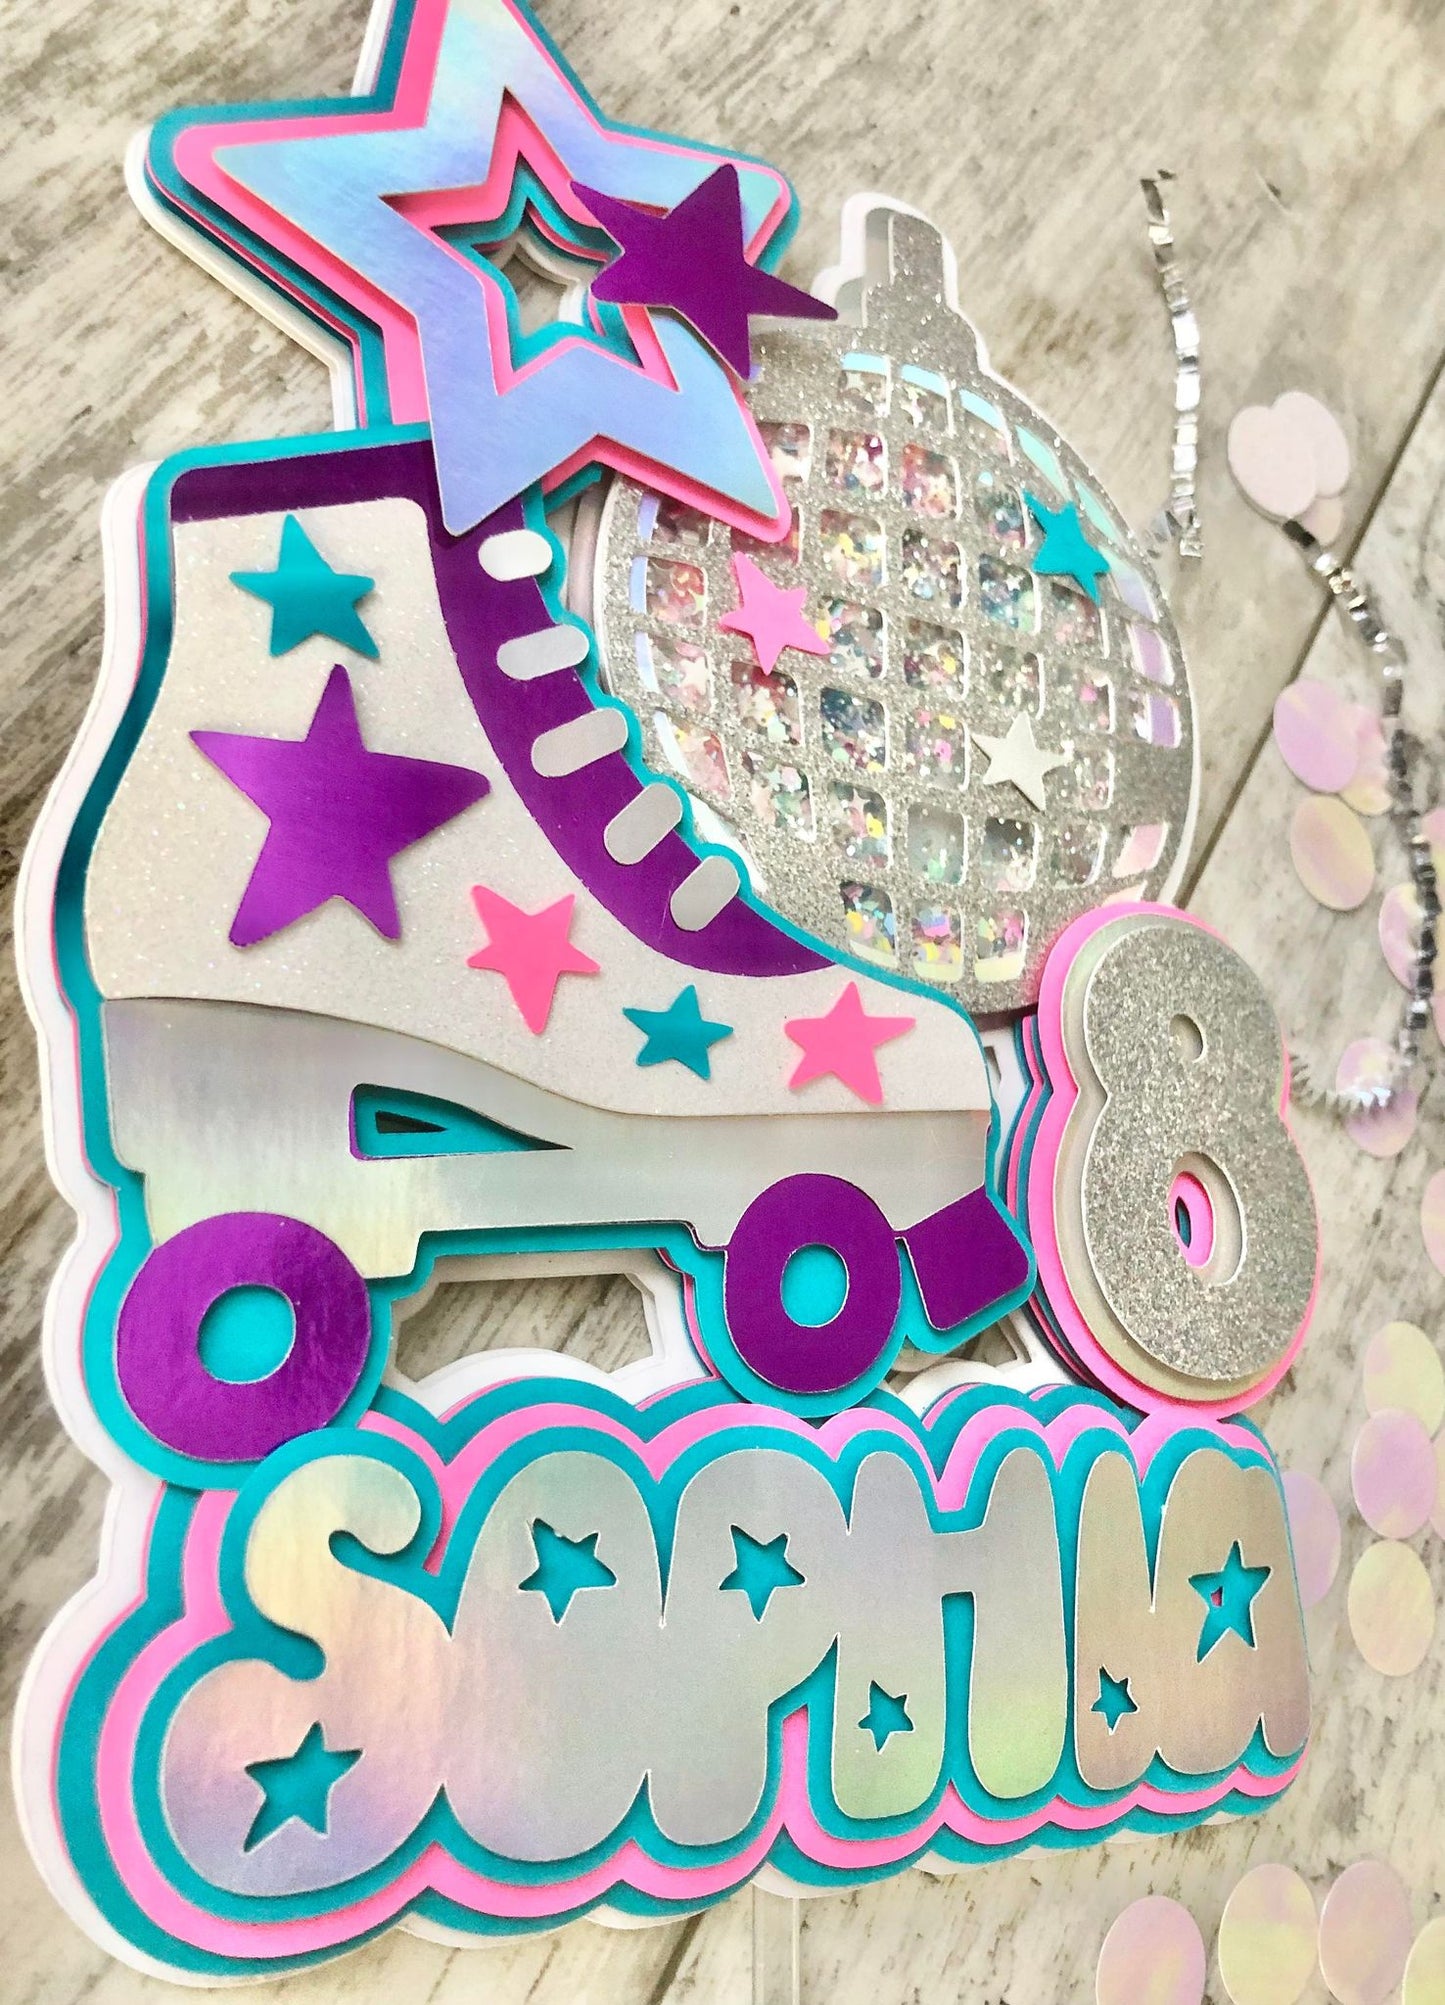 Rollerskate Roller Skate Disco Ball Star Birthday Glitter Shaker Cake Topper